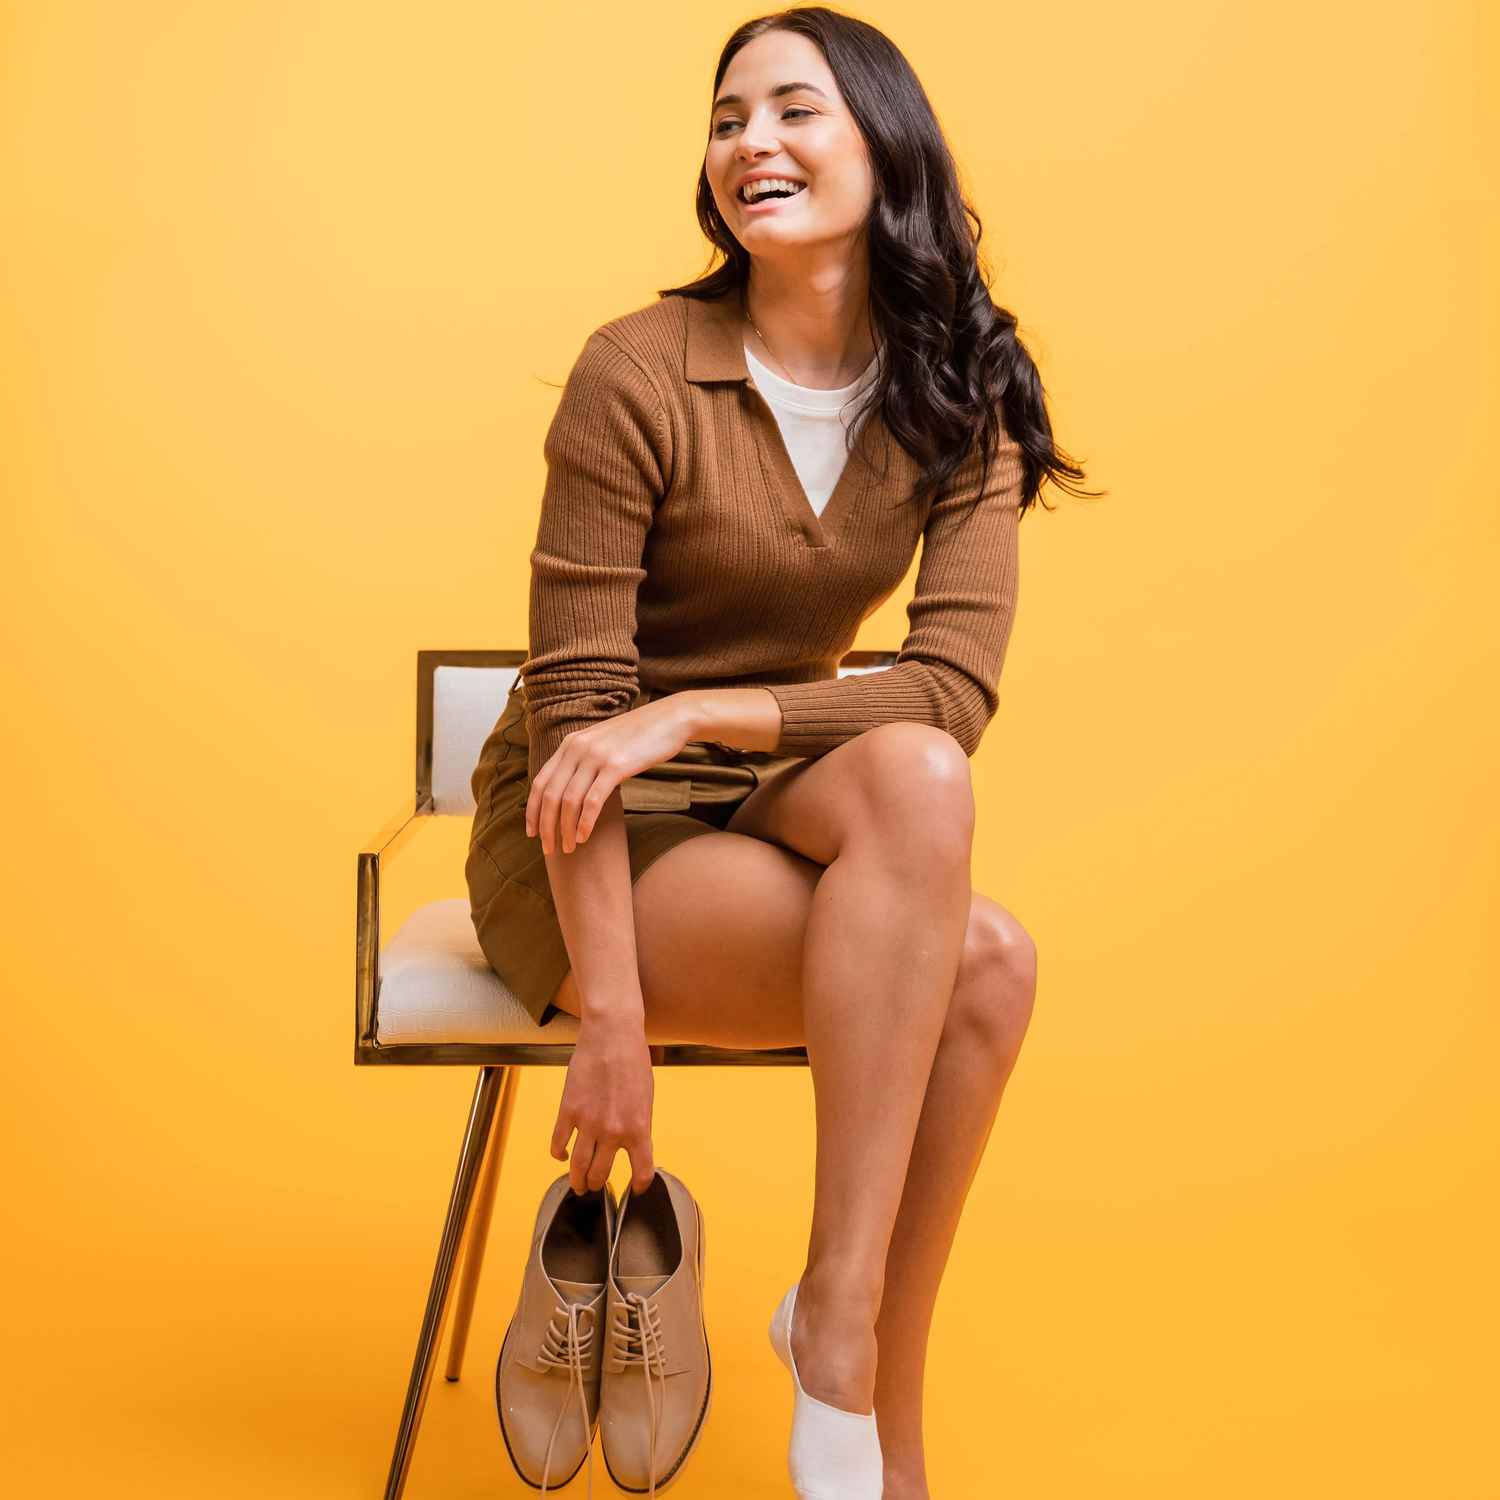 Una mujer se ríe mientras está sentada en una silla y sostiene sus zapatos.